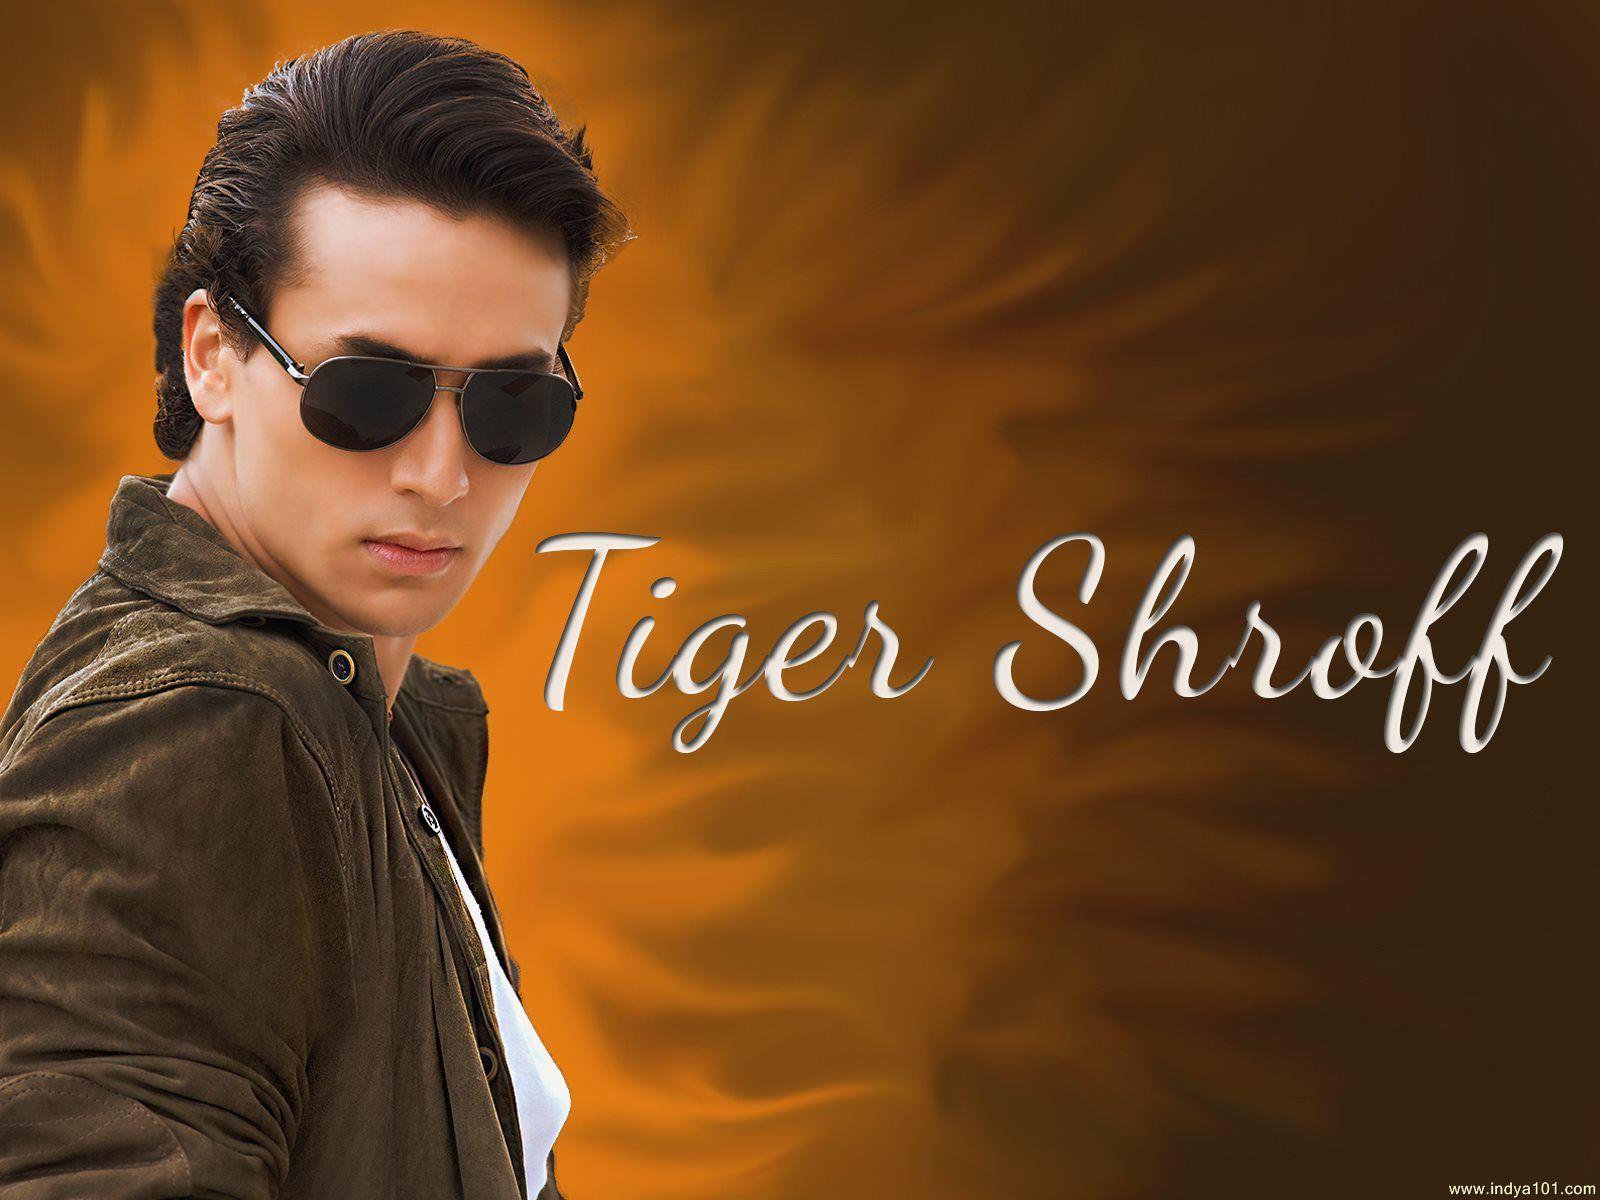 Tiger Shroff wallpaper - (1600x1200), Indya101.com